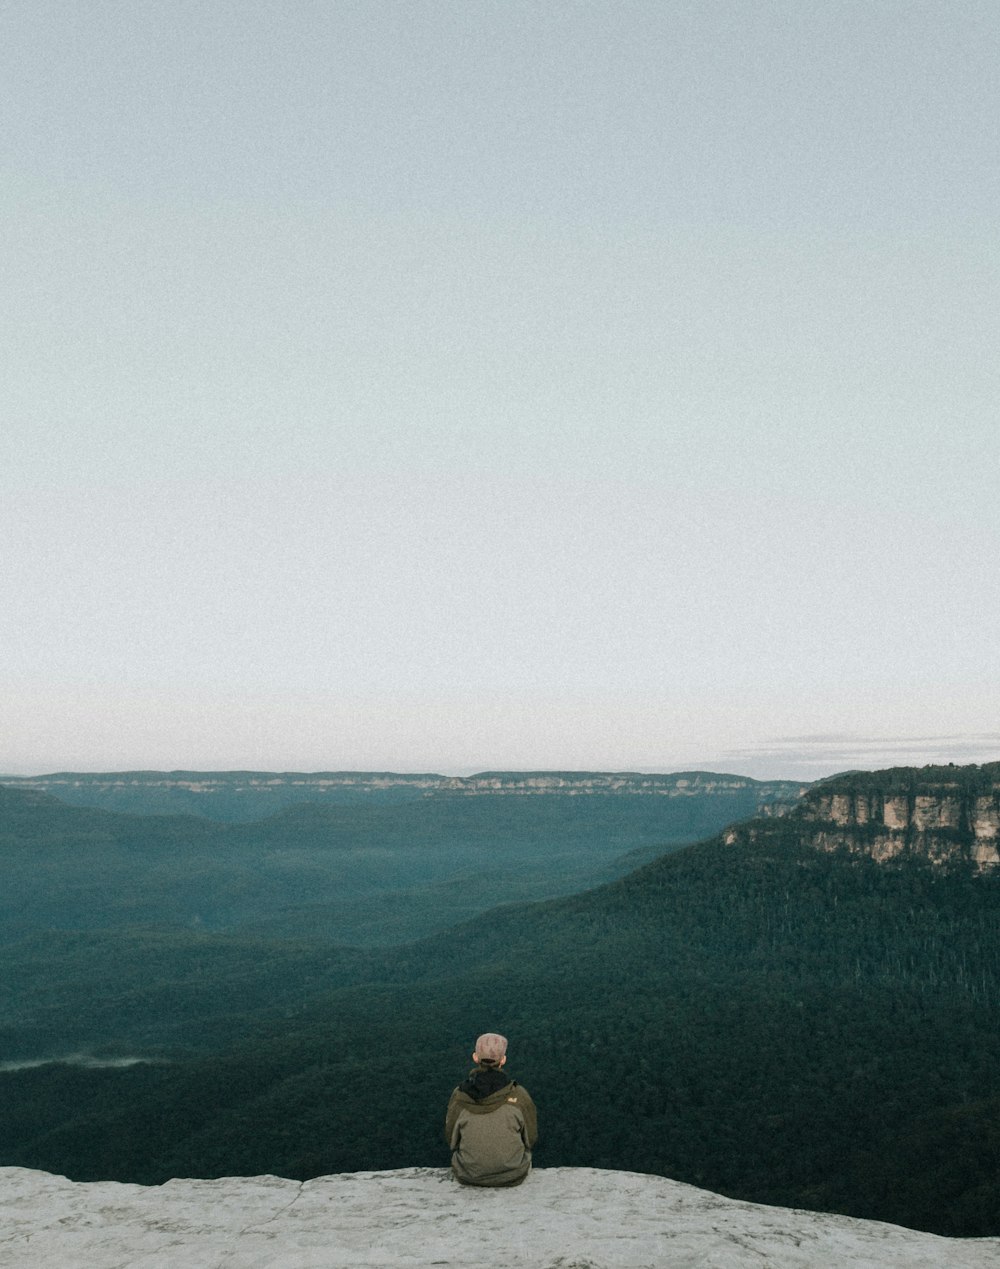 persona sentada en la roca mientras hace turismo